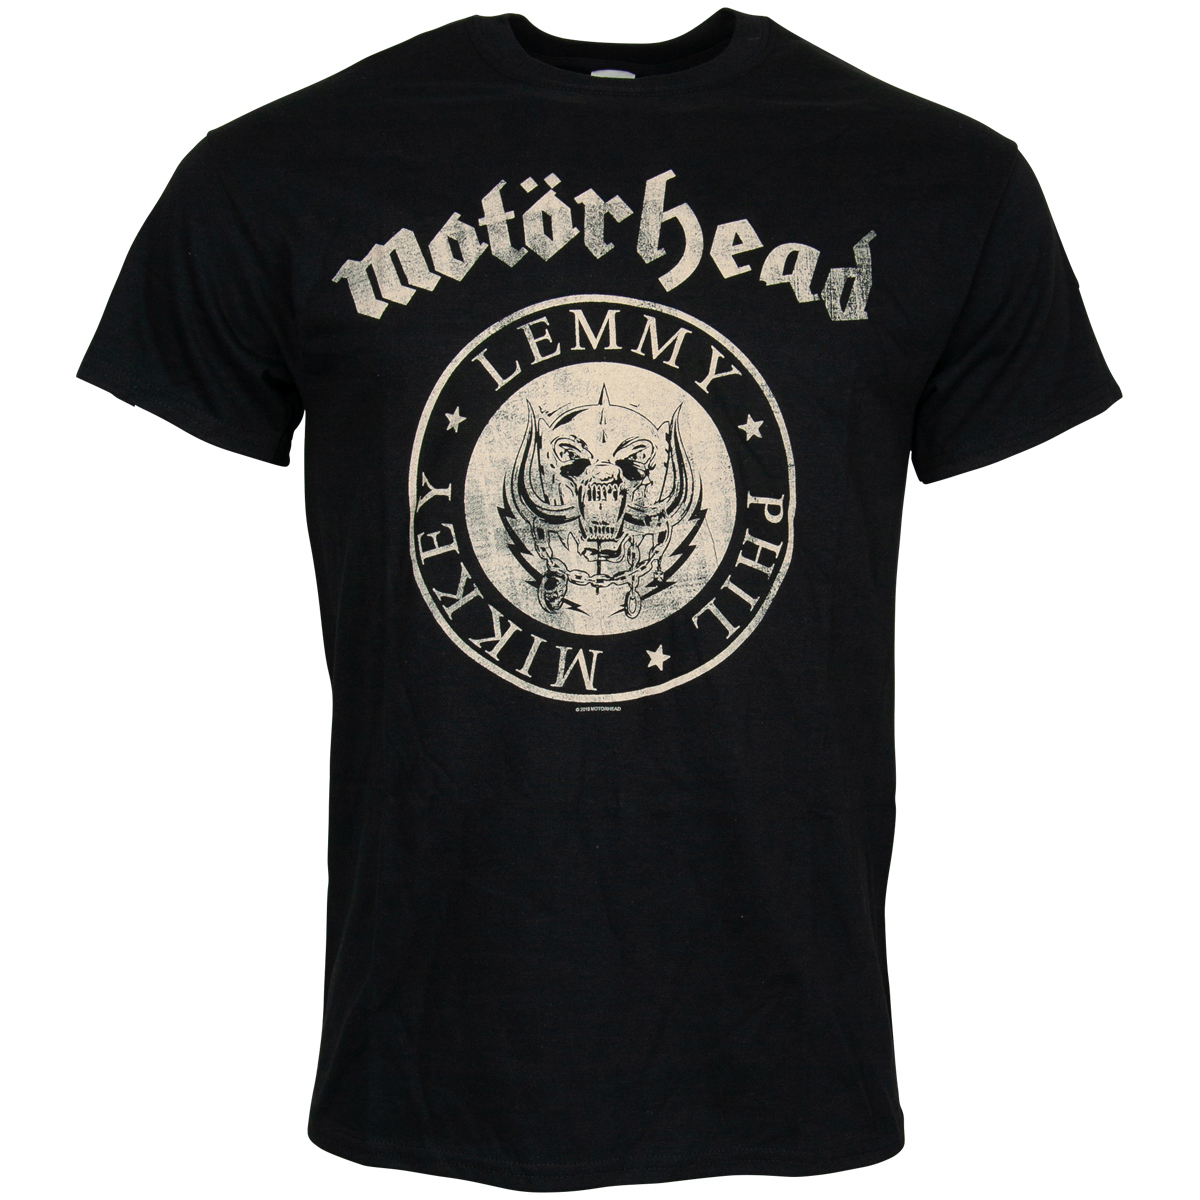 Motörhead - T-Shirt Undercover Seal Newsprint - schwarz